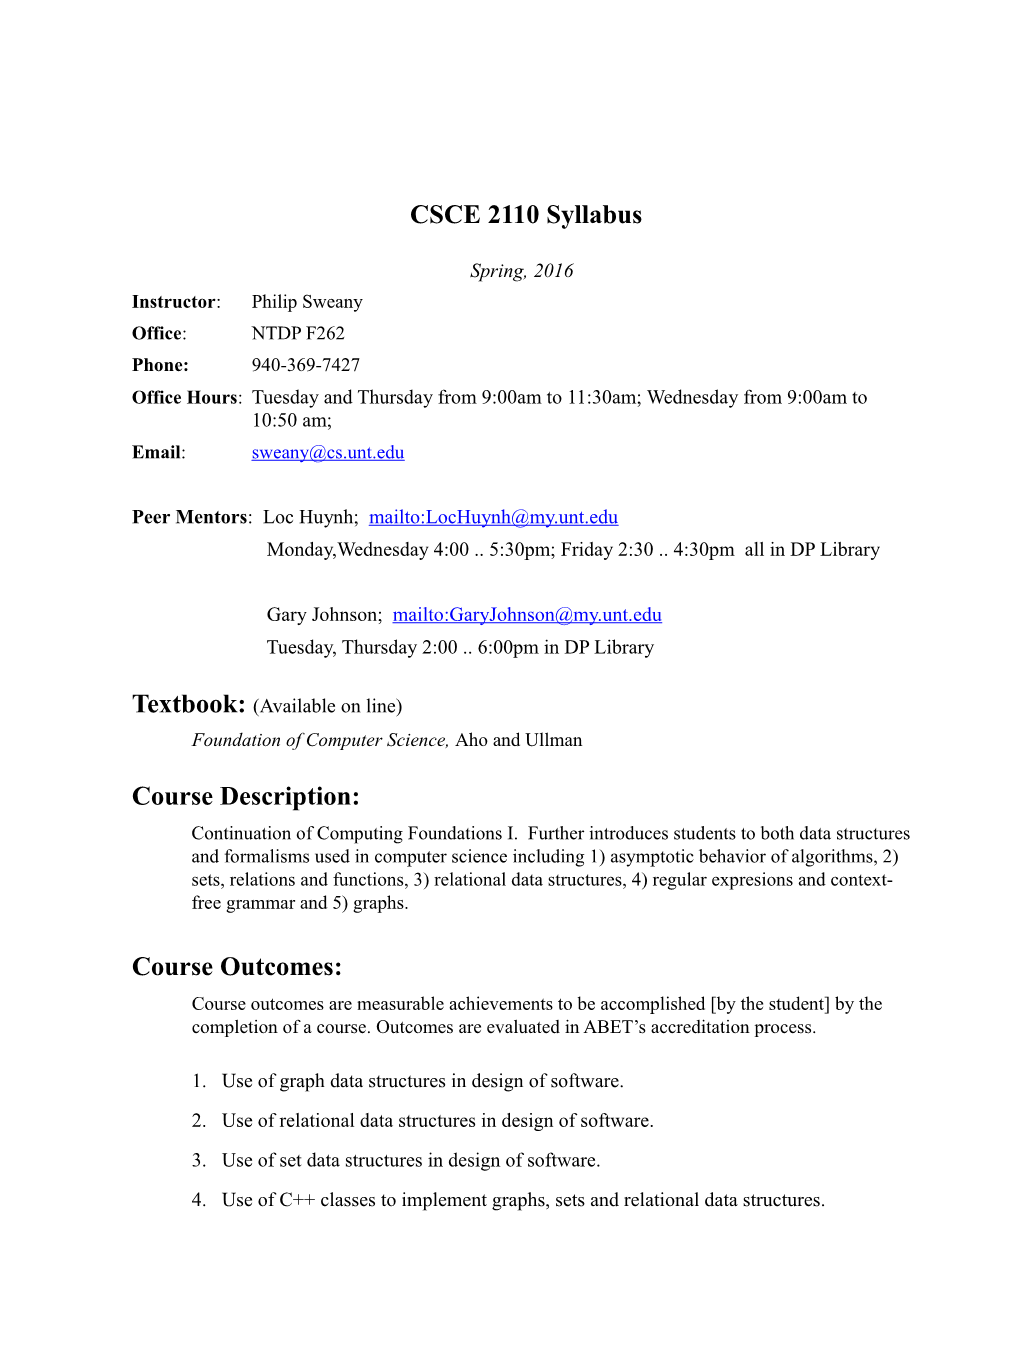 CSCE 2110 Syllabus